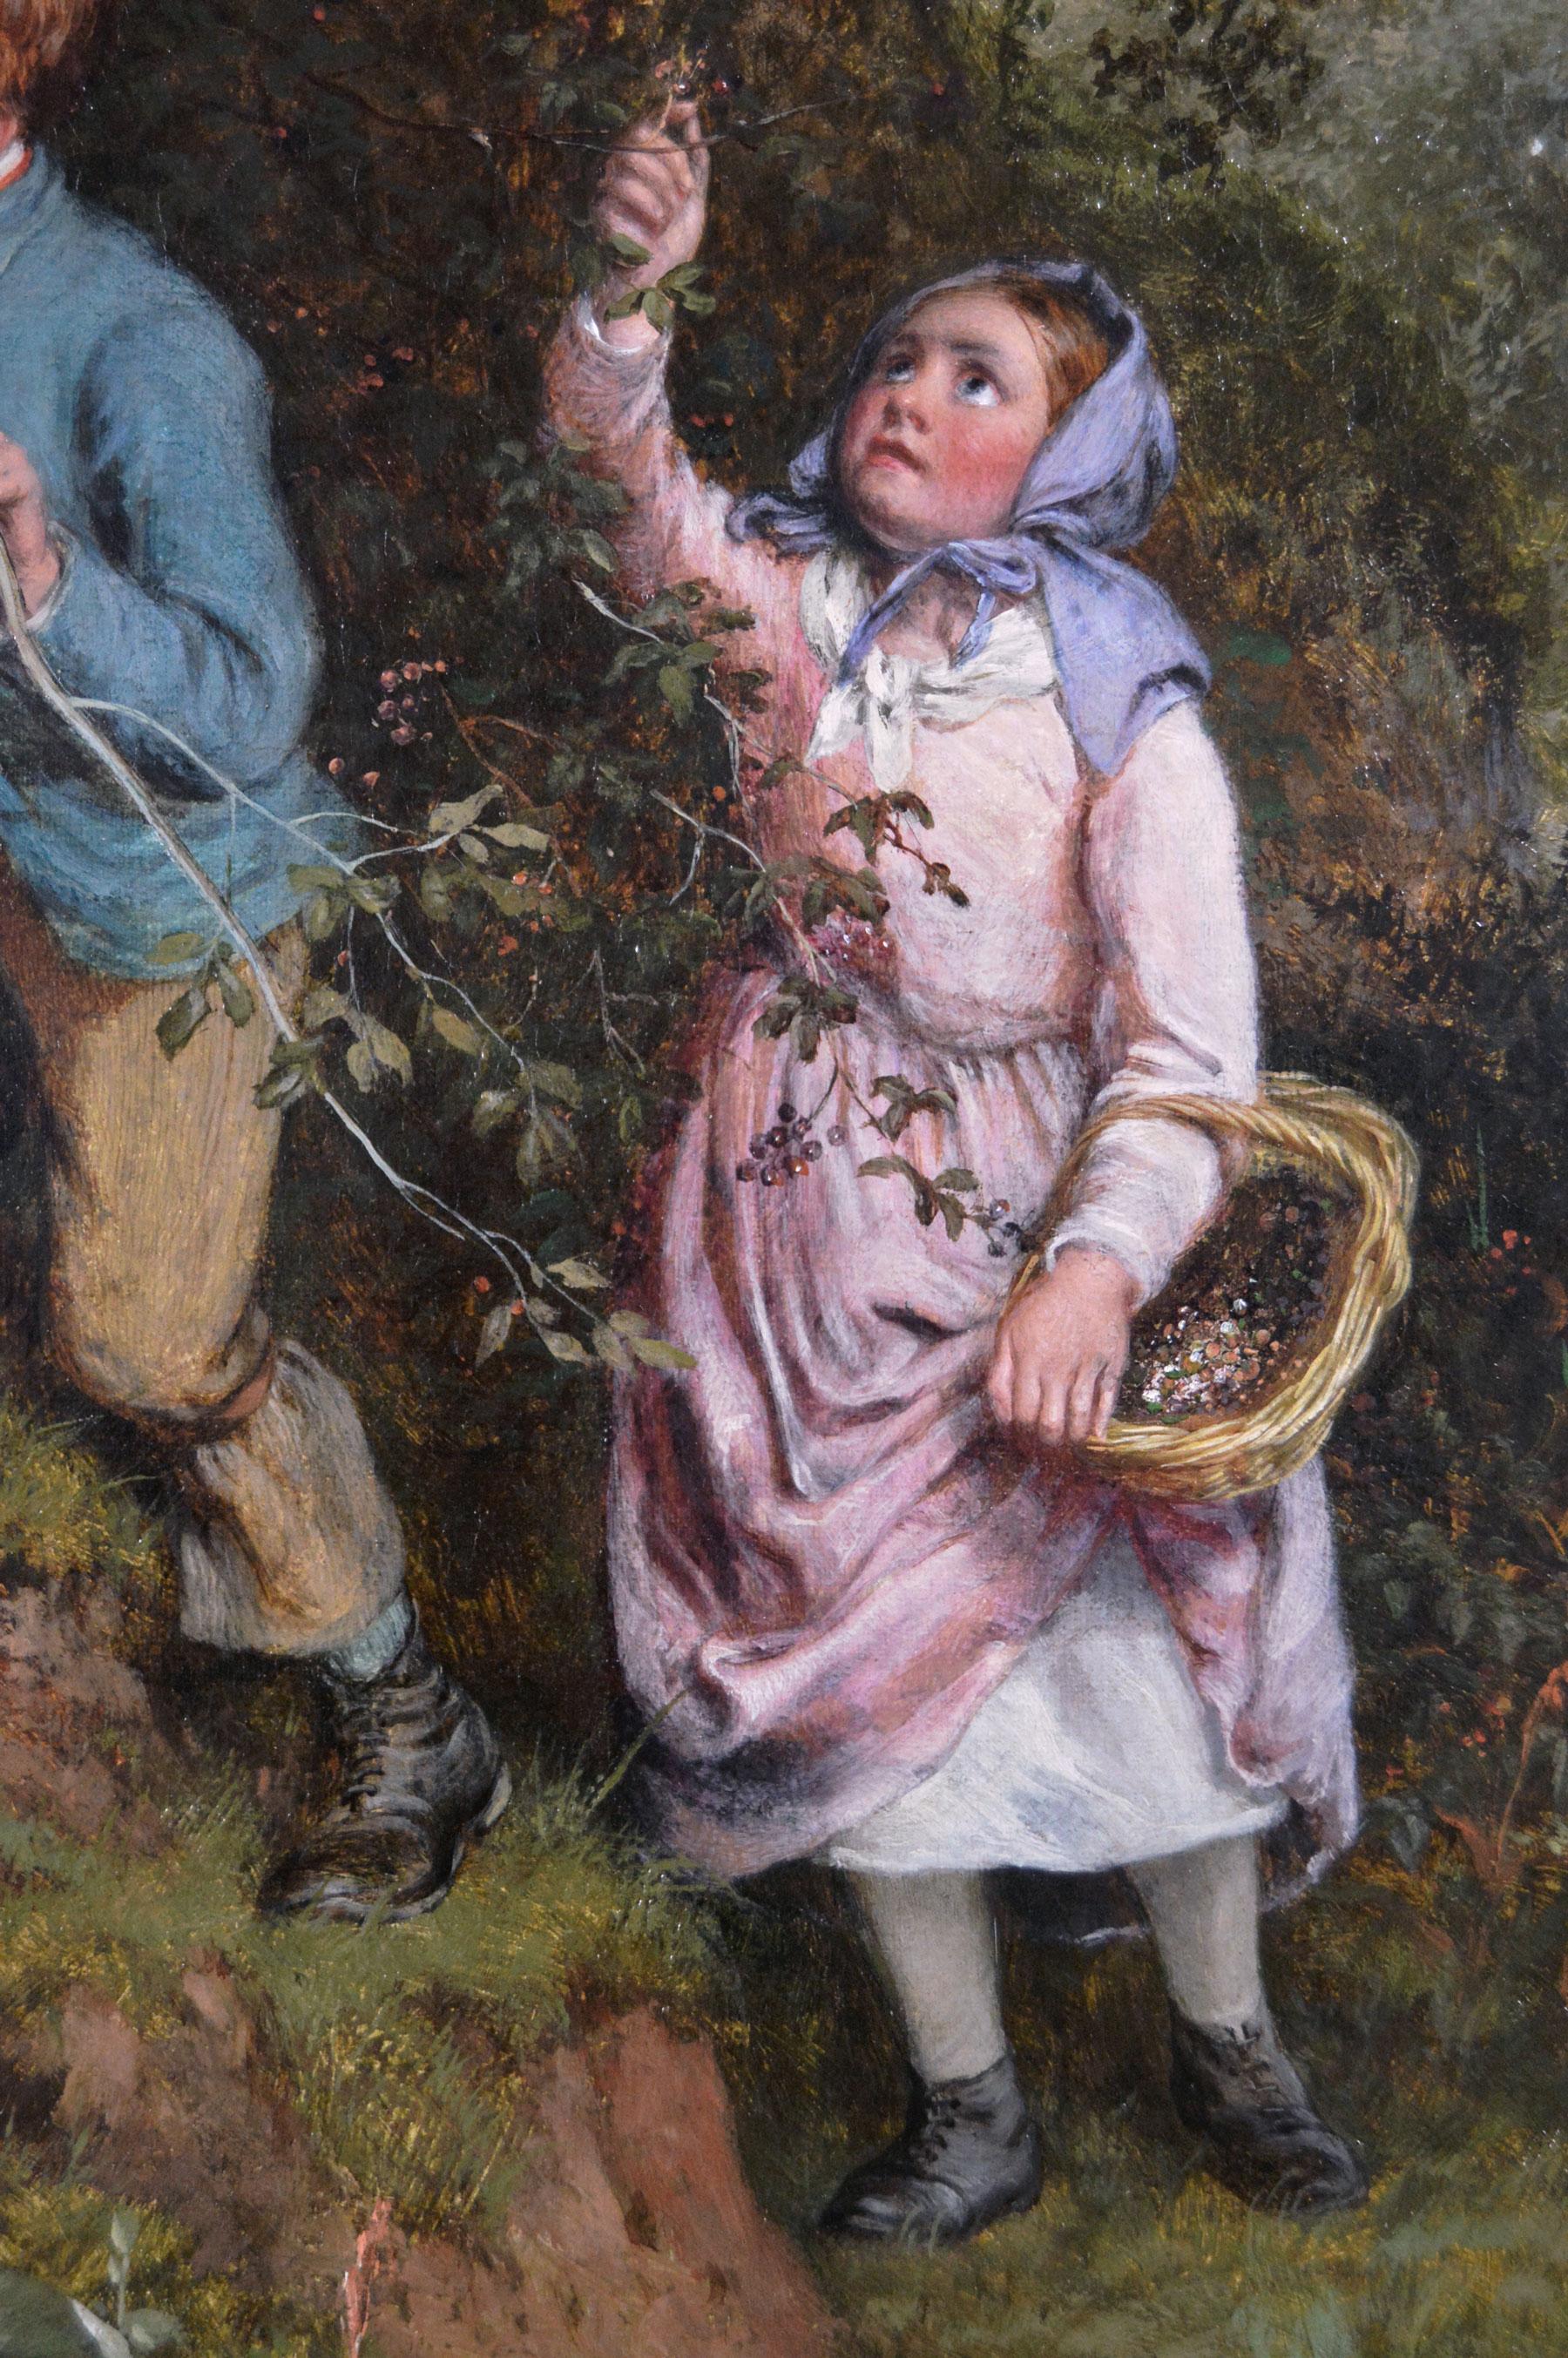 William Bromley 
britisch, (1816-1890)
Sammeln von Weißdornbeeren
Öl auf Leinwand, signiert 
Bildgröße: 27,5 Zoll x 35,5 Zoll 
Größe einschließlich Rahmen: 33,5 Zoll x 41,5 Zoll

Ein hübsches Gemälde von William Bromley, das drei Kinder beim Sammeln